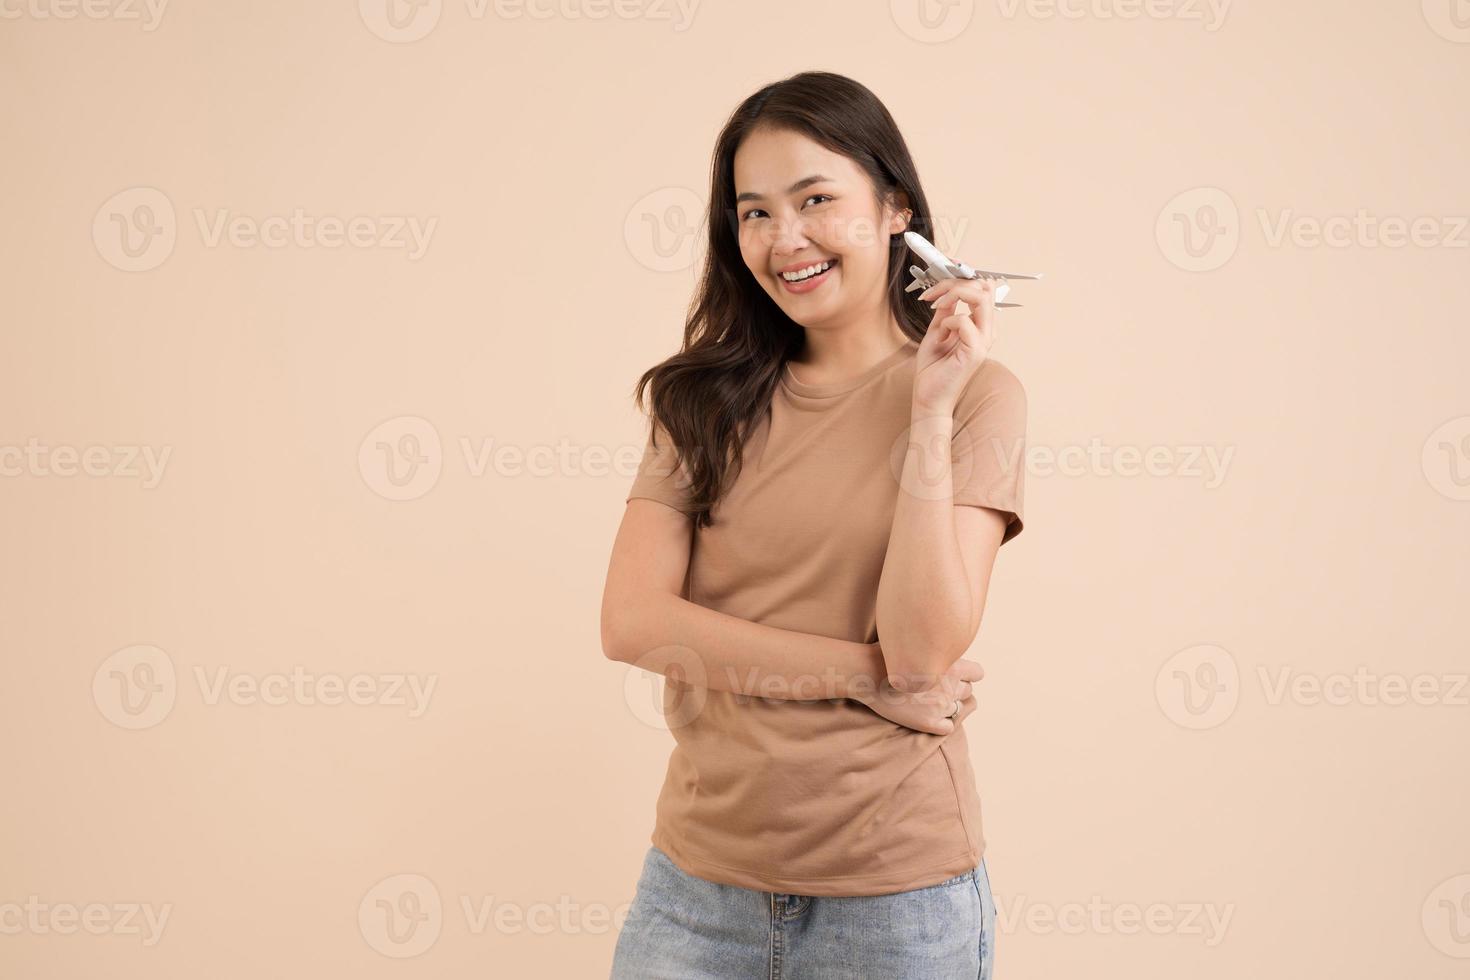 gelukkig jong vrouw staand en Holding een wit speelgoed- vlak dromer in de studio foto